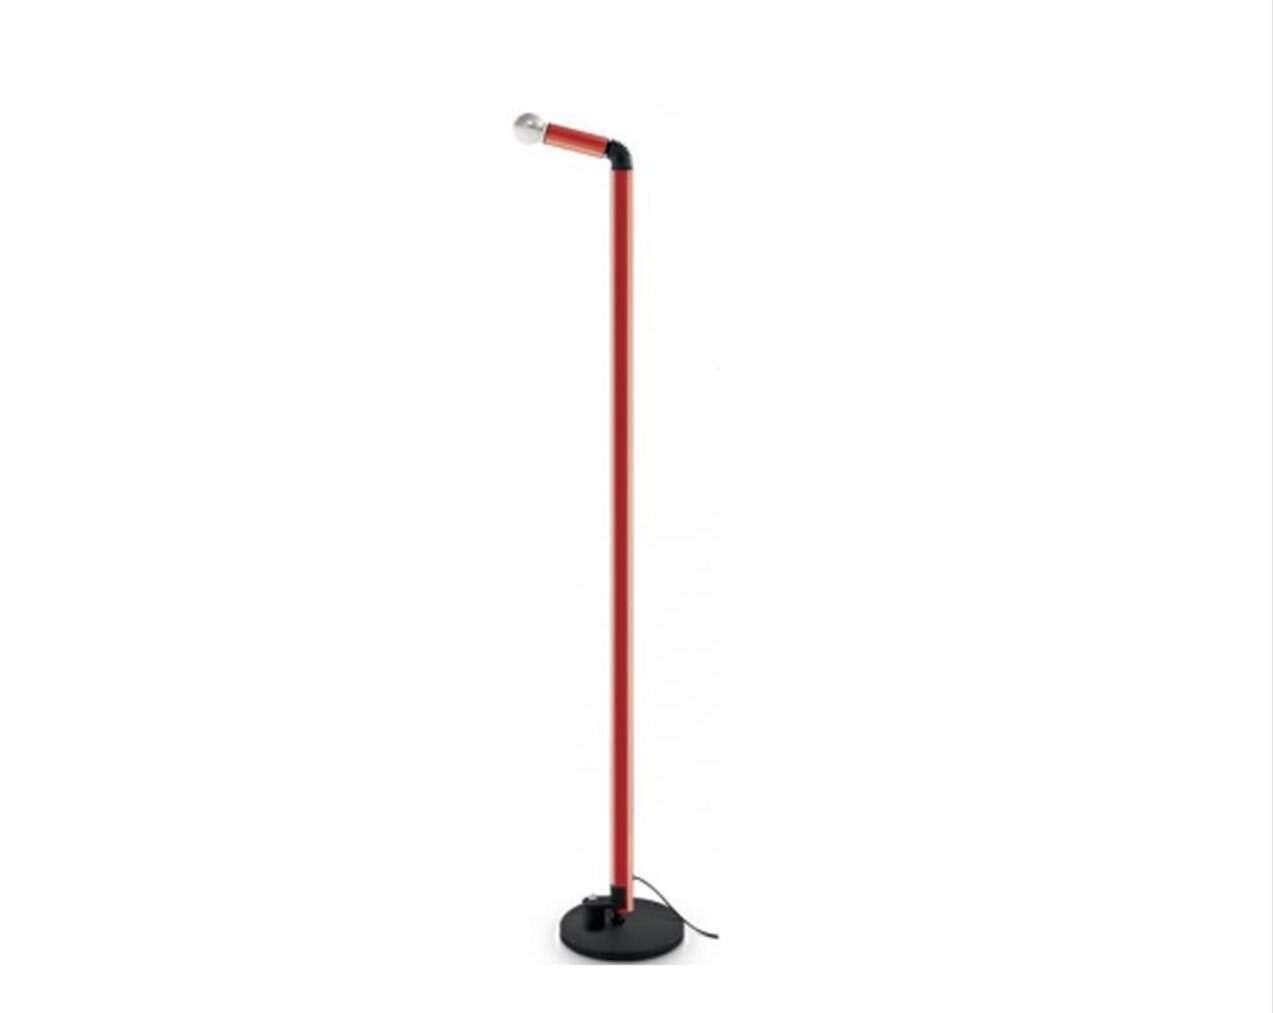 Periscopio-Floor-Lamp-Tall-Red